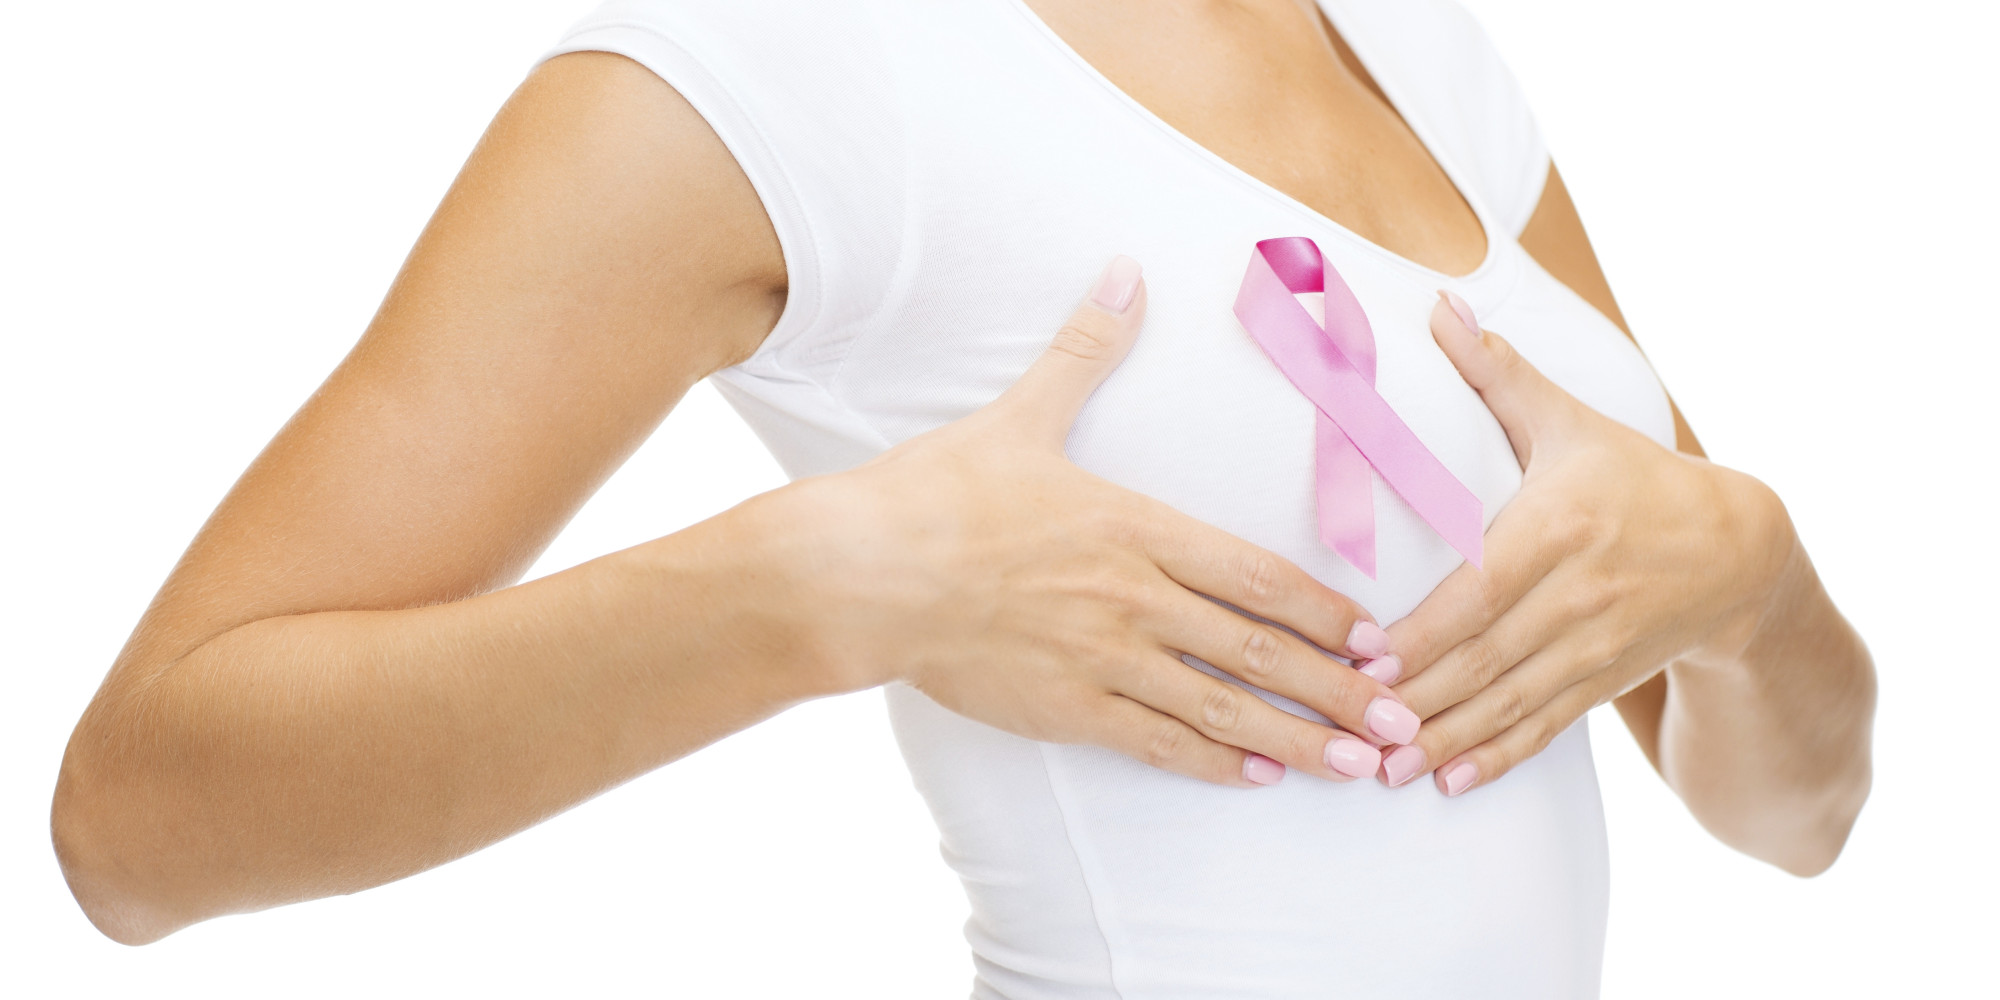 乳癌患者的常規掃描可預測心血管疾病風險